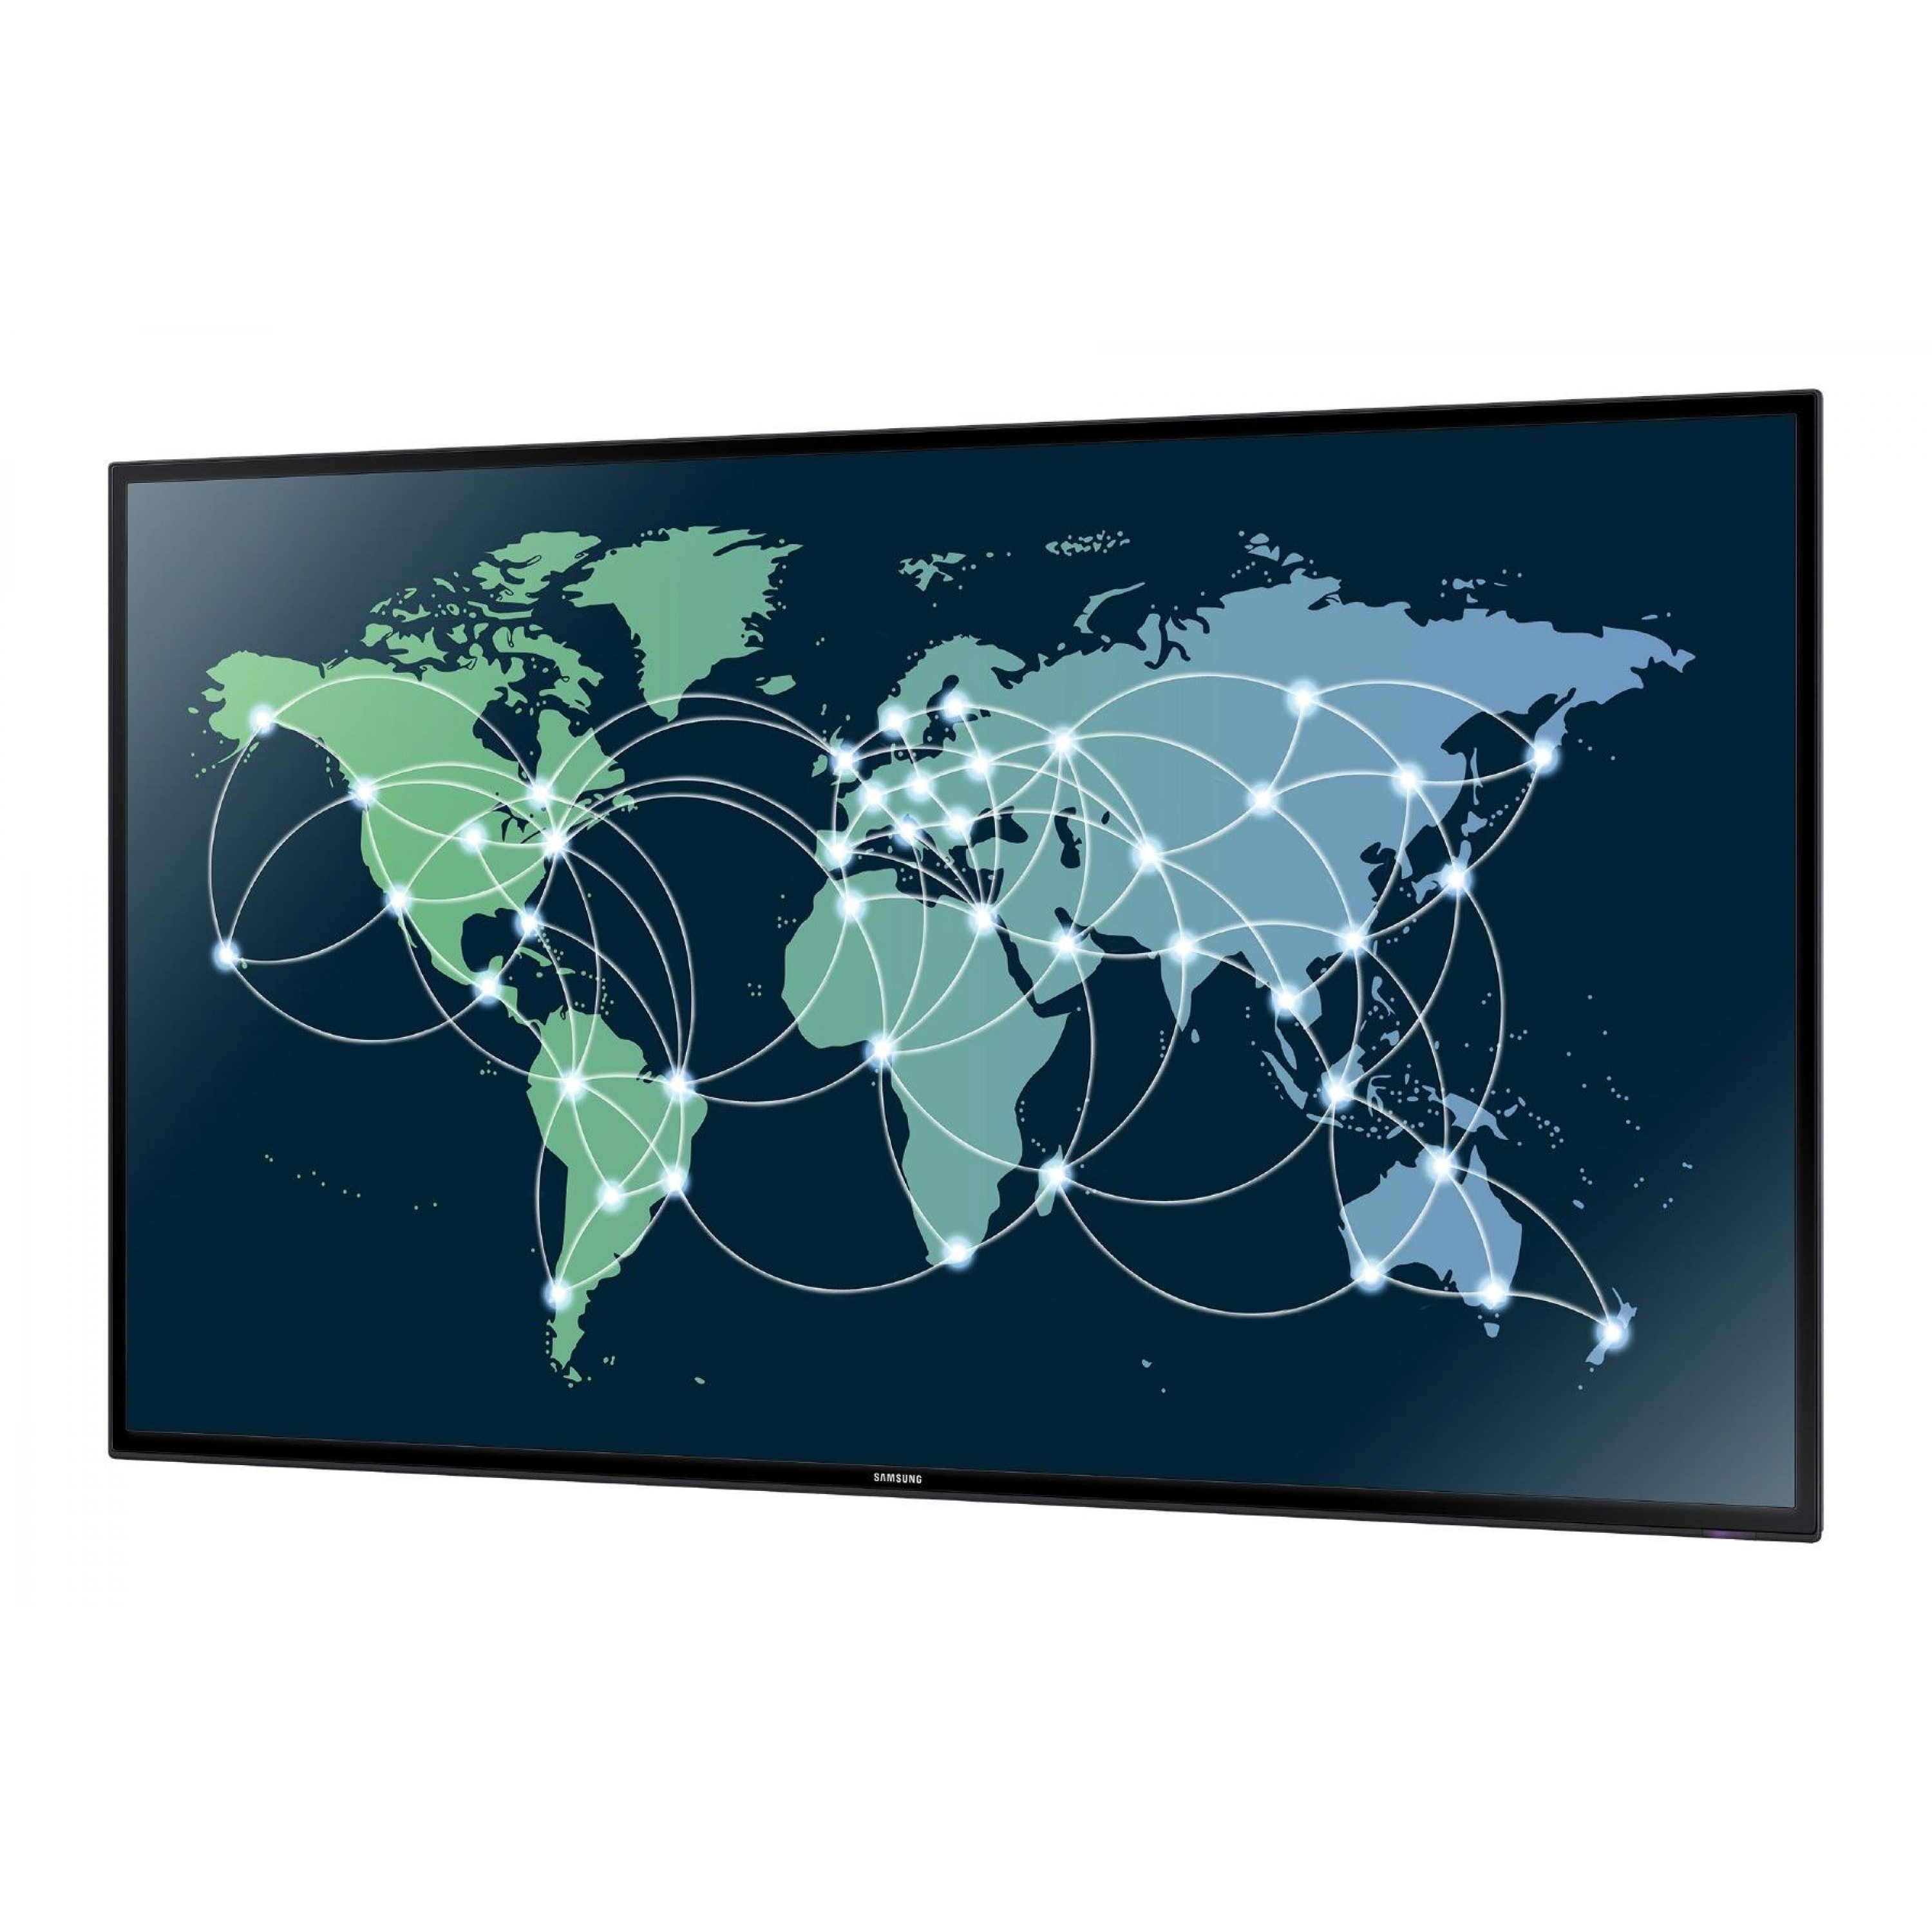 Карта интернета тв. Всемирная сеть на мировой карте. Карта глобального интернета. Мировая сеть интернет карта.